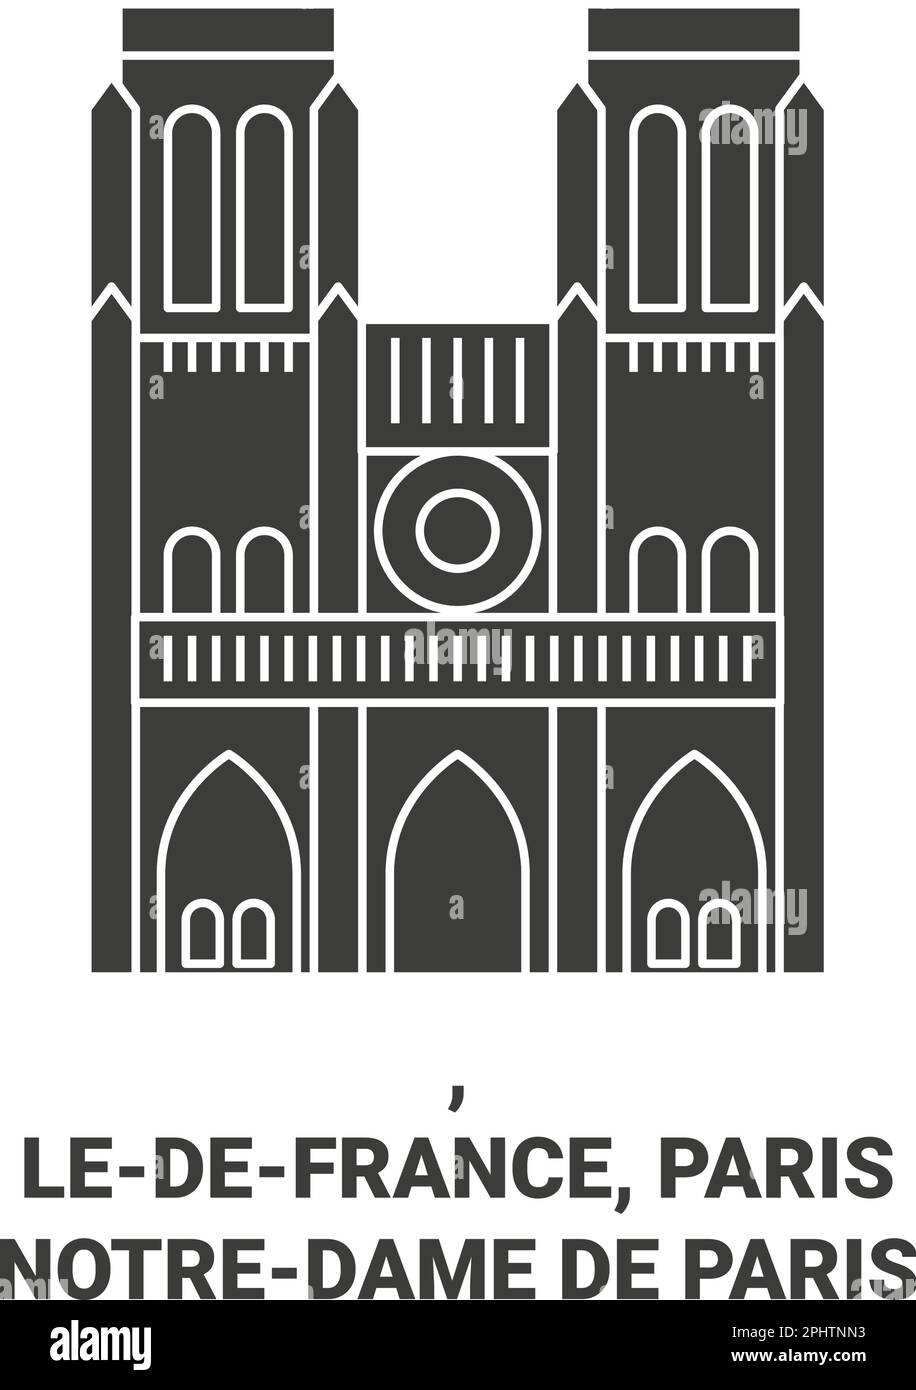 France, Parisnotredame de Paris voyage repère illustration vecteur Illustration de Vecteur